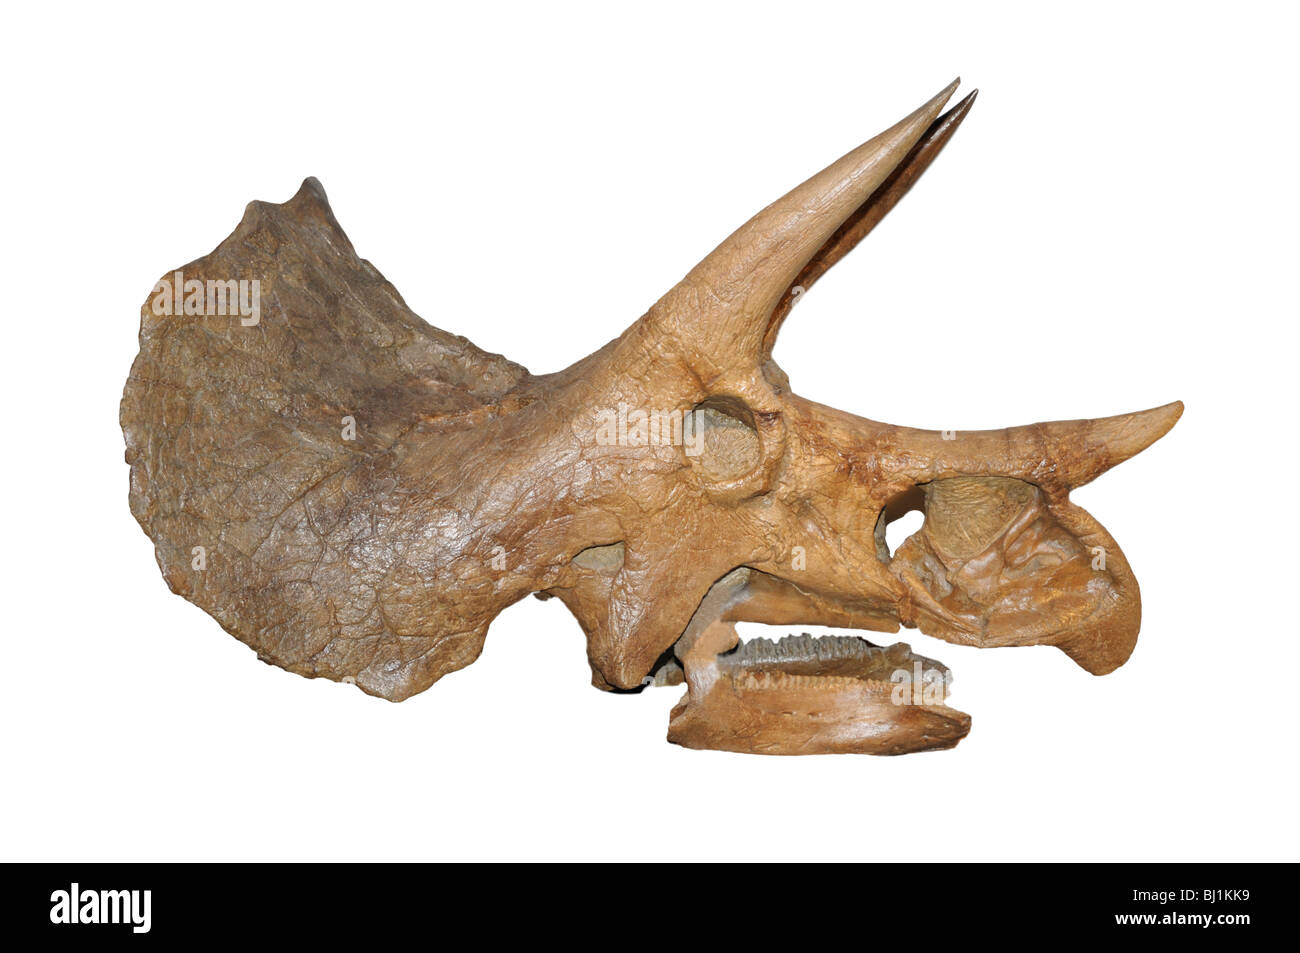 Triceratops prorsus cranio fossile, fine del periodo Cretaceo Foto Stock